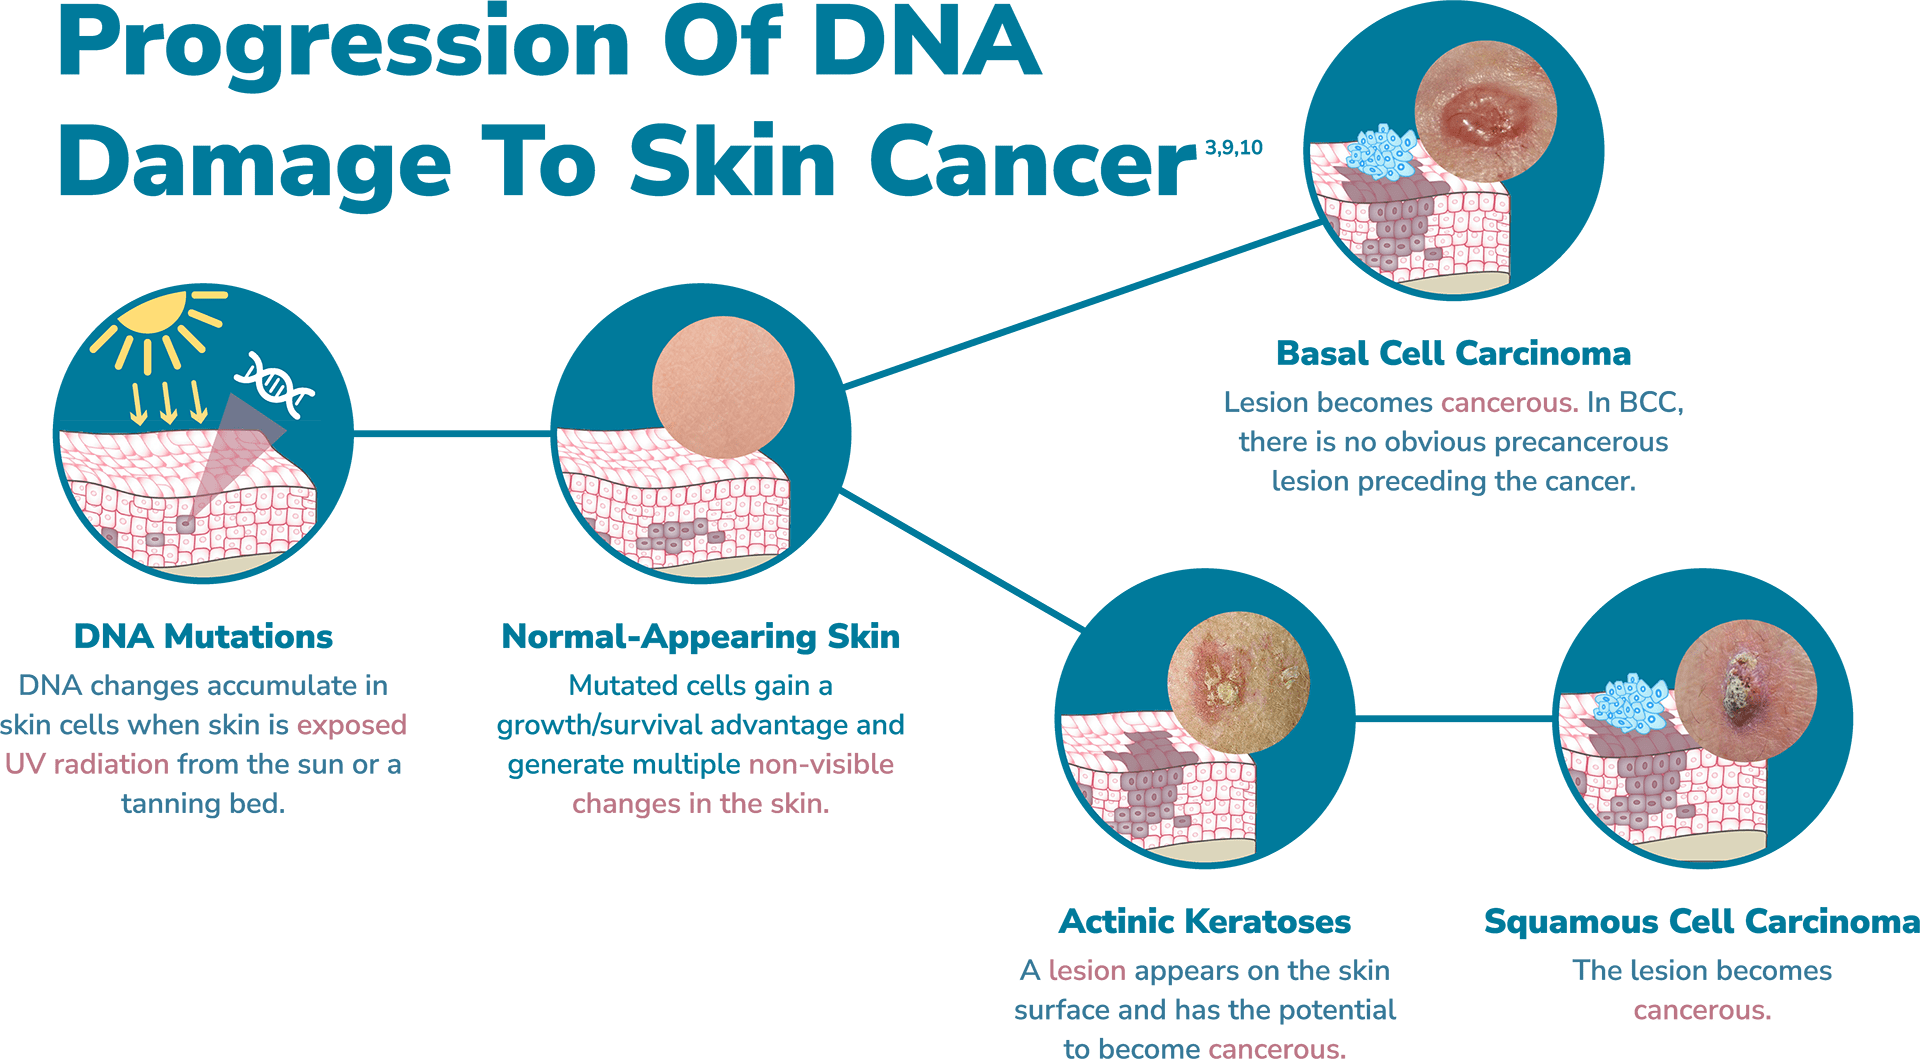 Progression: DNA Damage to Skin Cancer